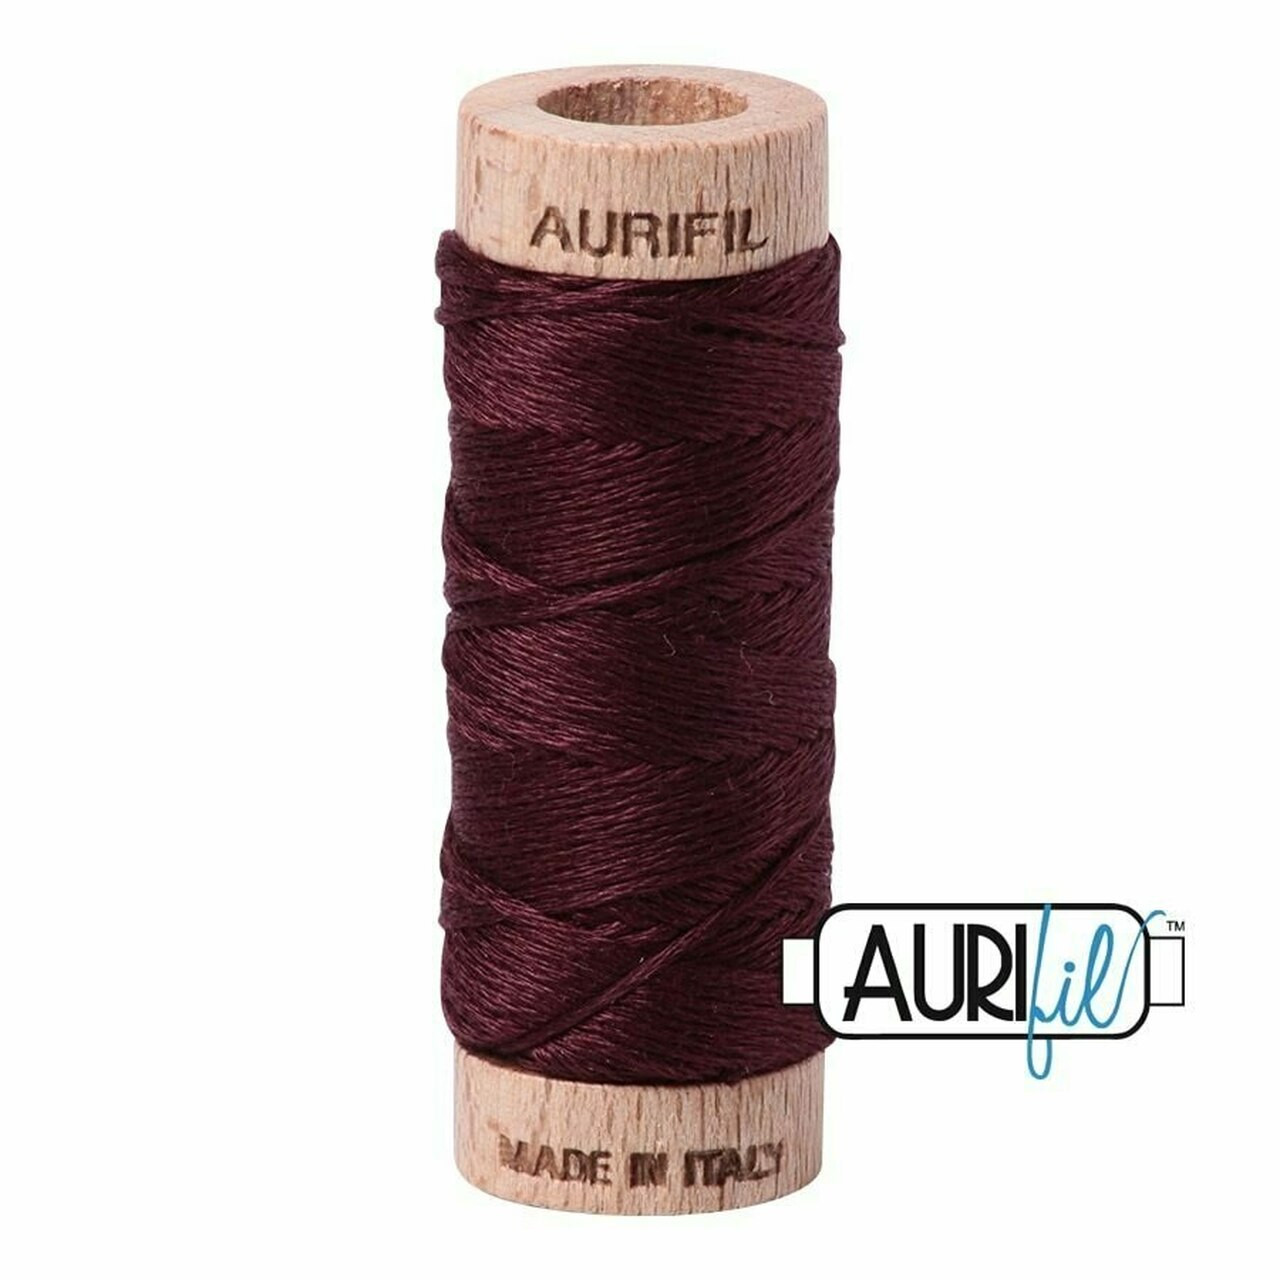 Aurifil 2468 - Dark Wine